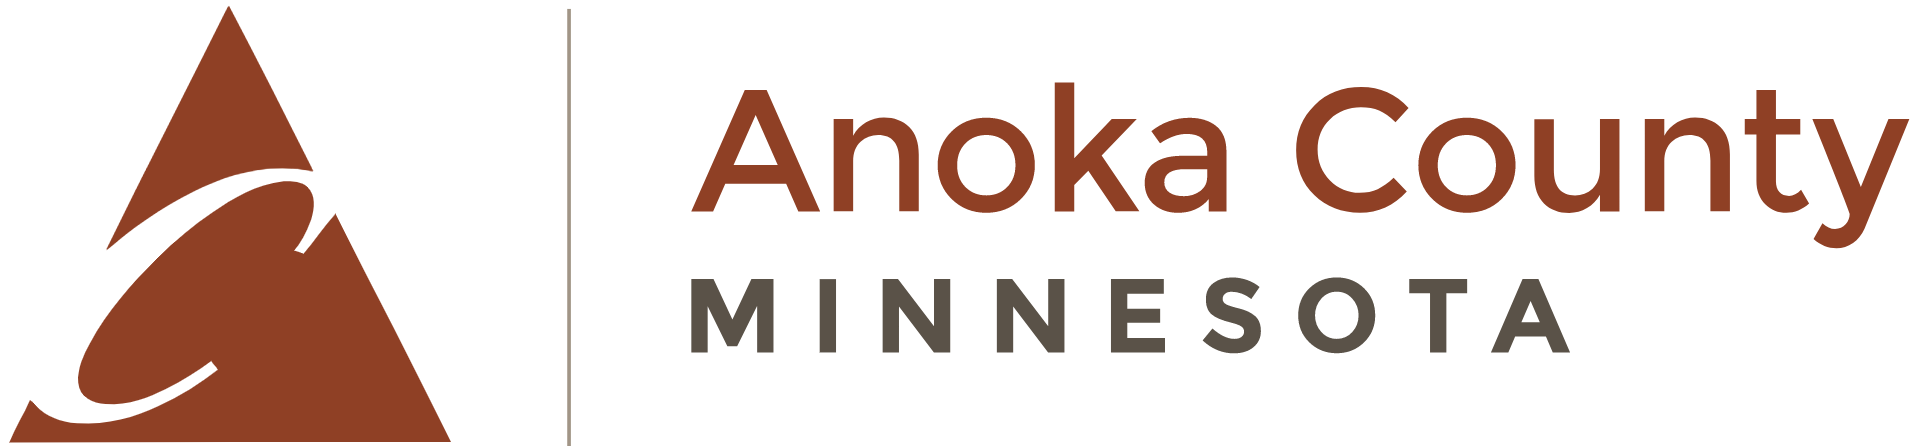 County of Anoka logo